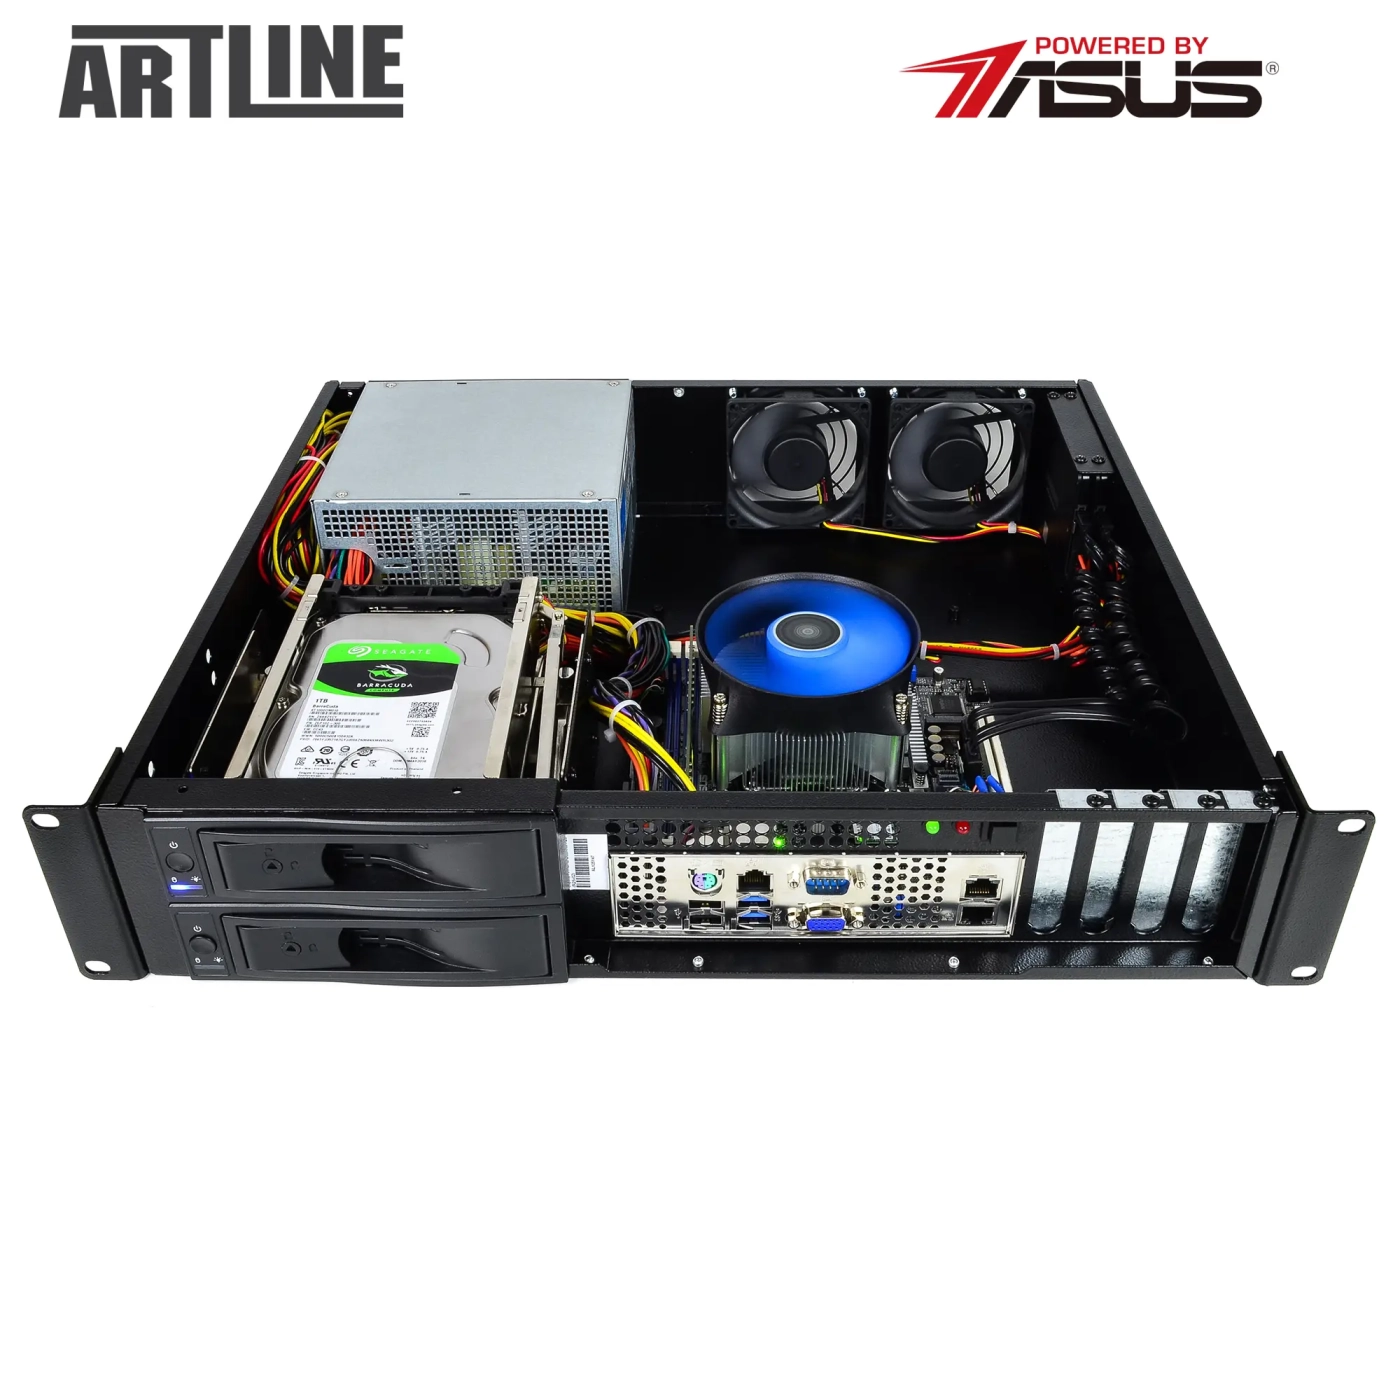 Купить Сервер ARTLINE Business R37 (R37v102) - фото 9